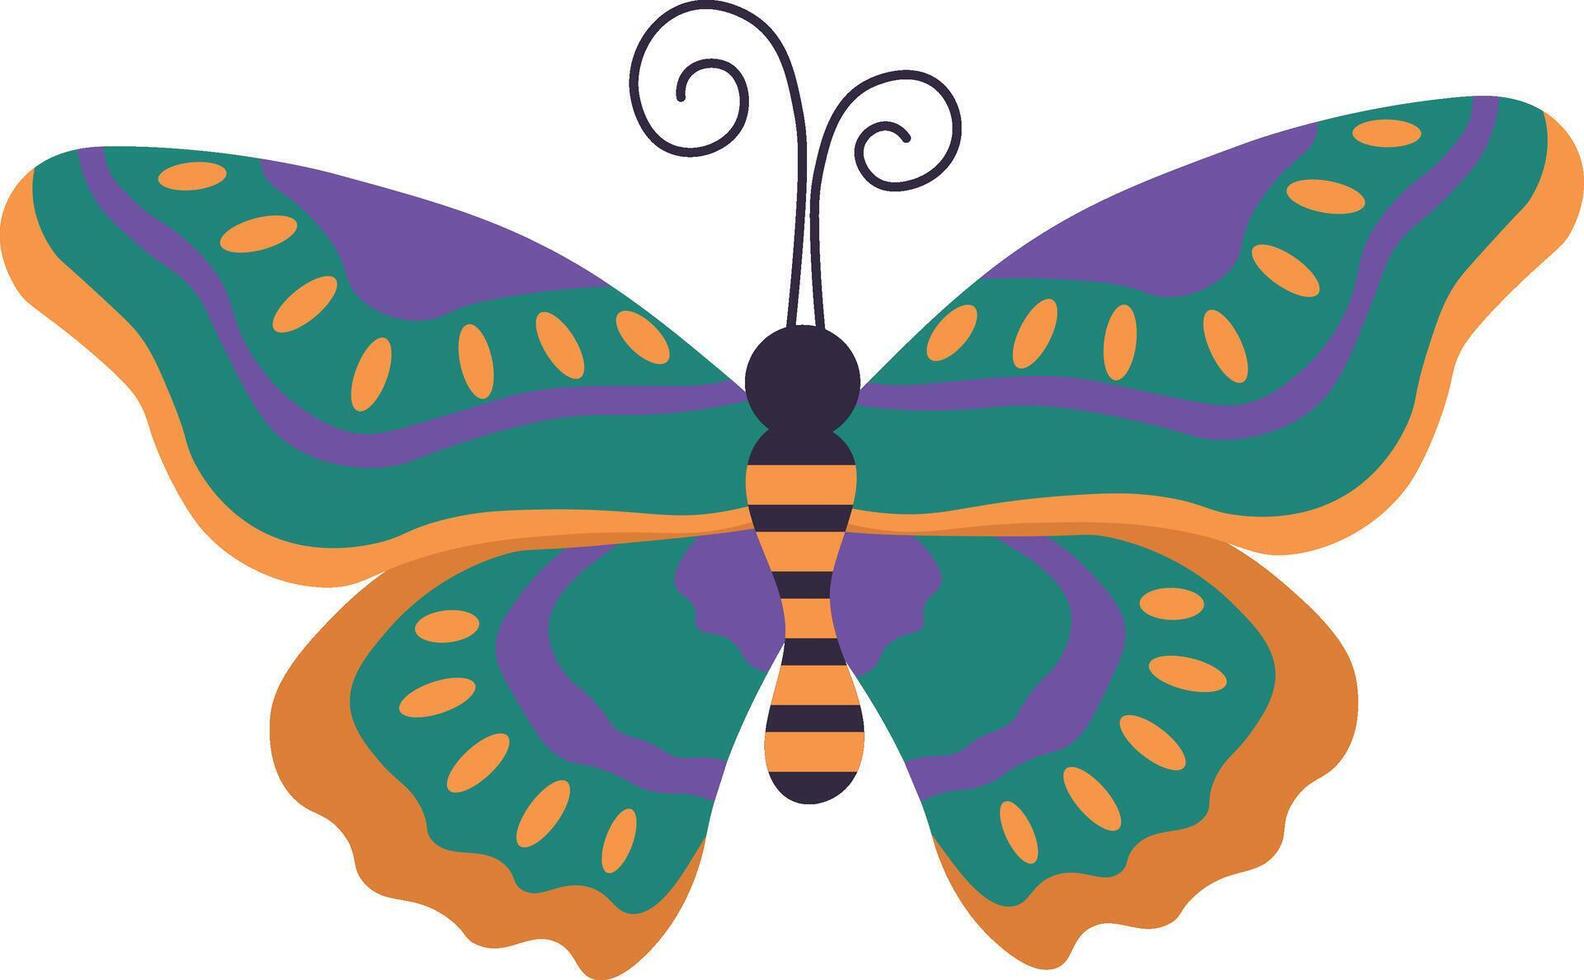 adorable papillon illustration dans plat dessin animé conception. isolé sur blanc Contexte vecteur